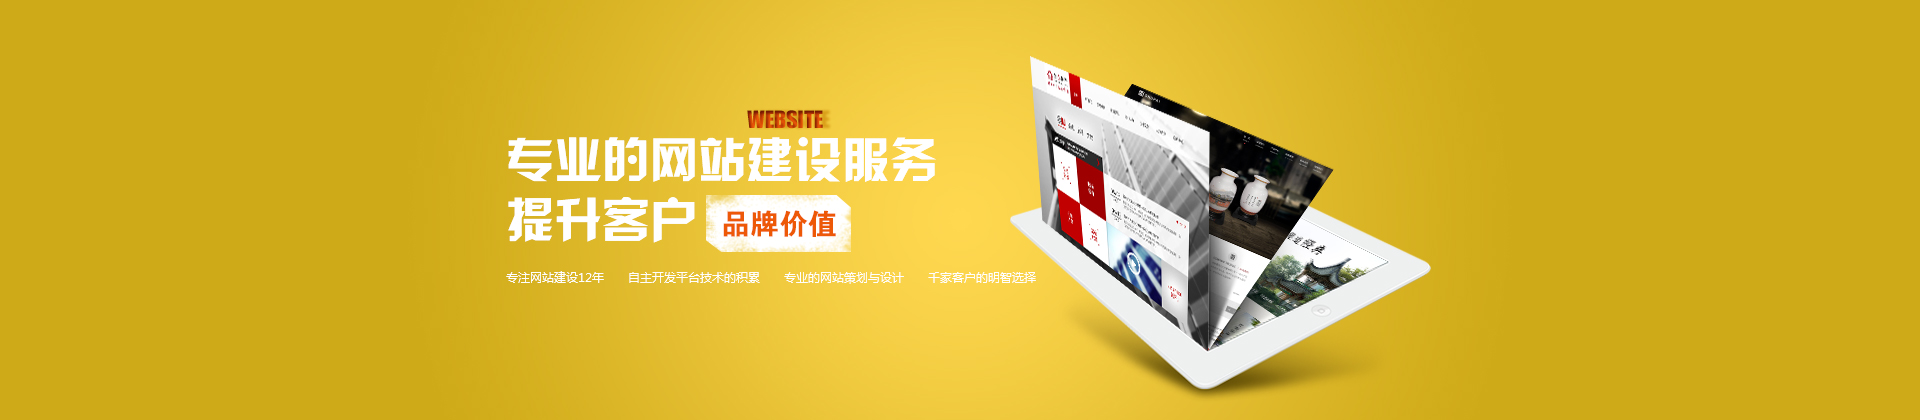 邯郸网络公司提供专业的网站建设服务，提升客户品牌价格